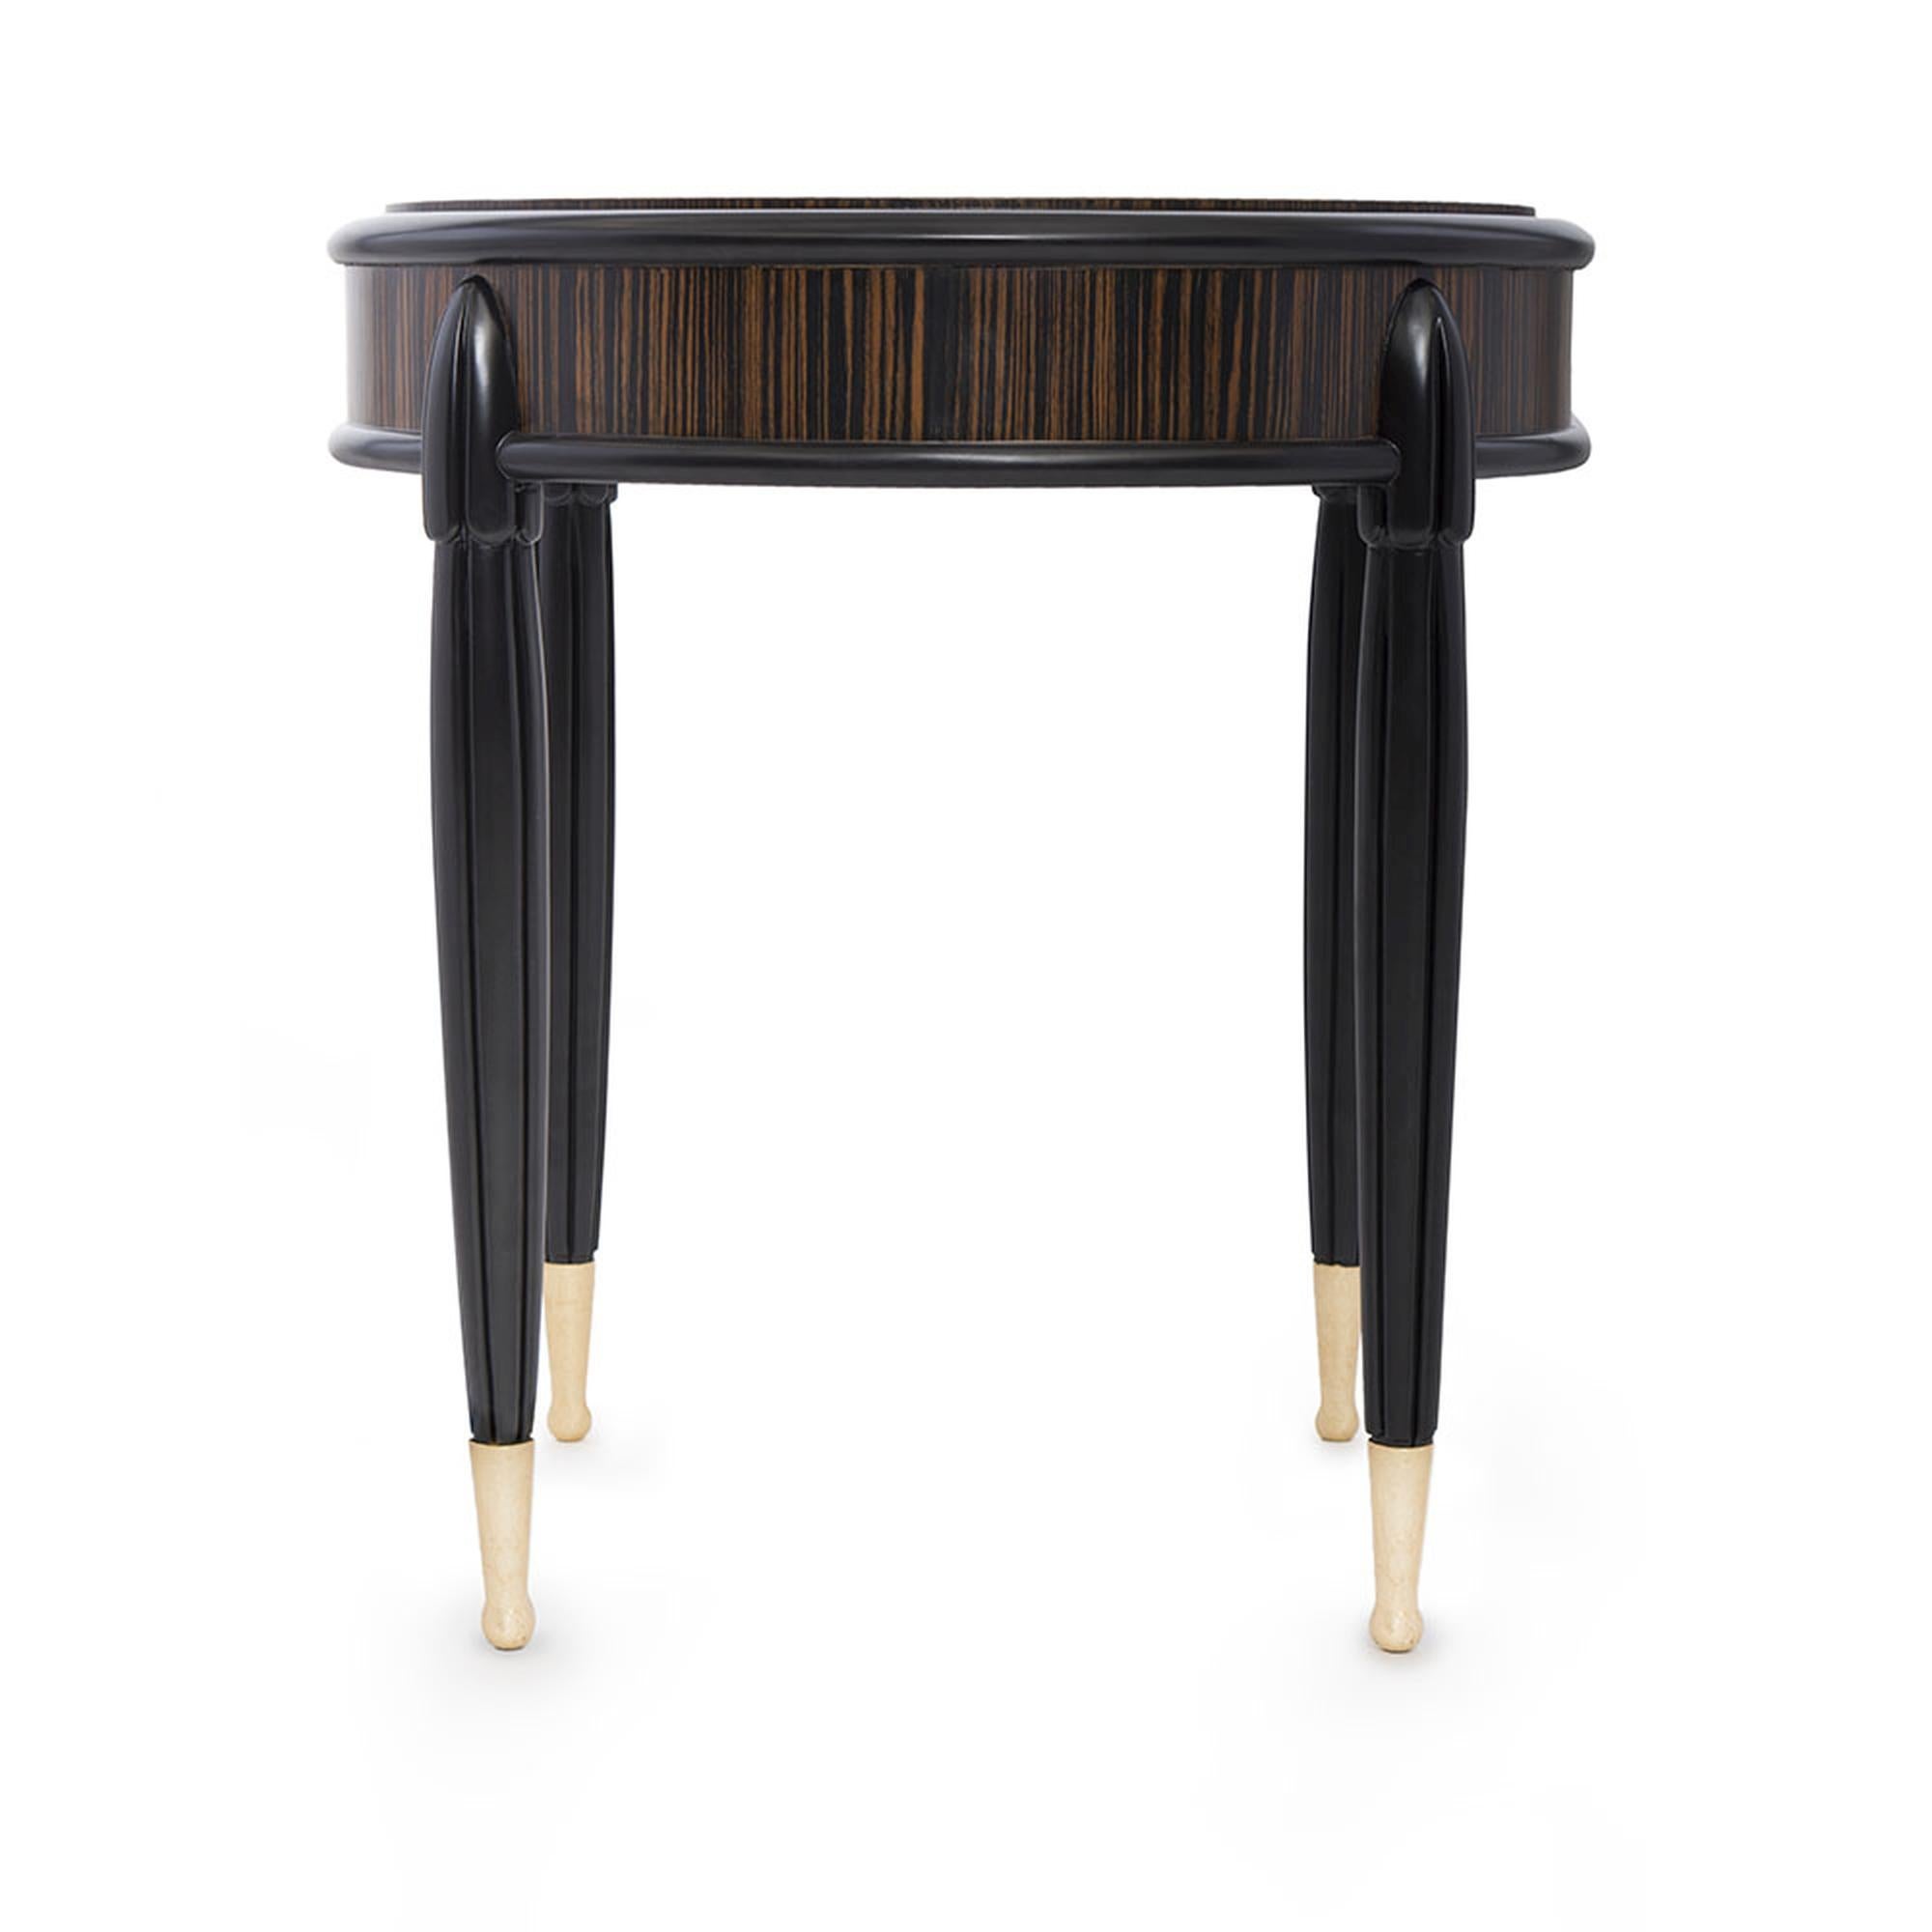 Der Marmont Beistelltisch ist eine elegante Ergänzung für jedes Zuhause. Dieser Tisch mit seiner wunderschönen Platte aus Ebenholz-Makassar-Furnier und den vier matten, lackierten Beinen ist schlicht, stilvoll und vielseitig. Die Beine sind mit